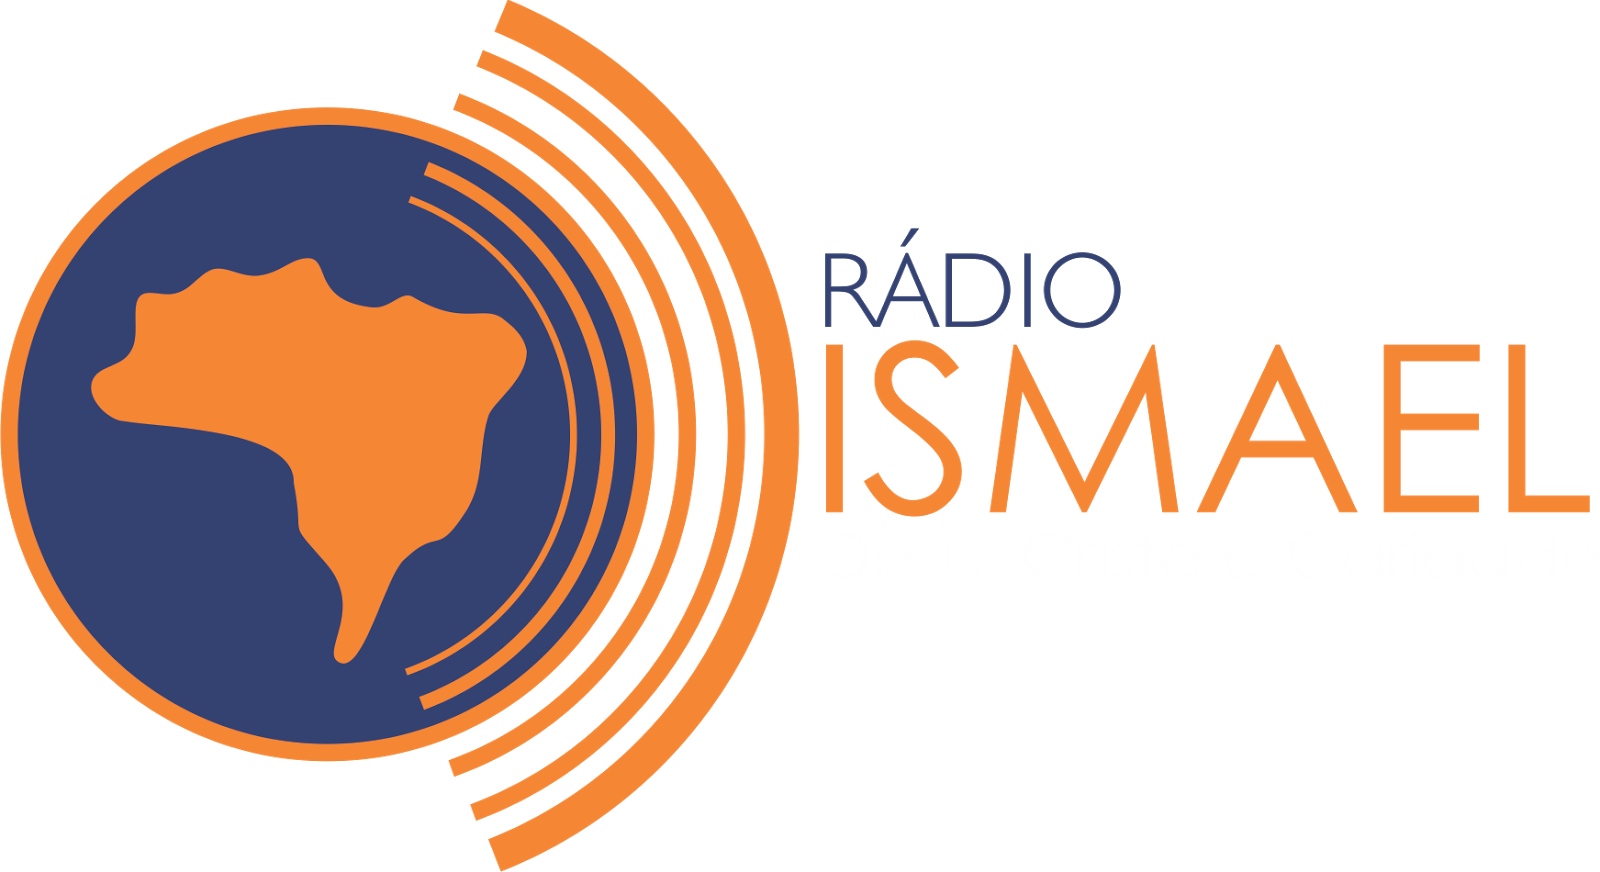 Rádio Ismael